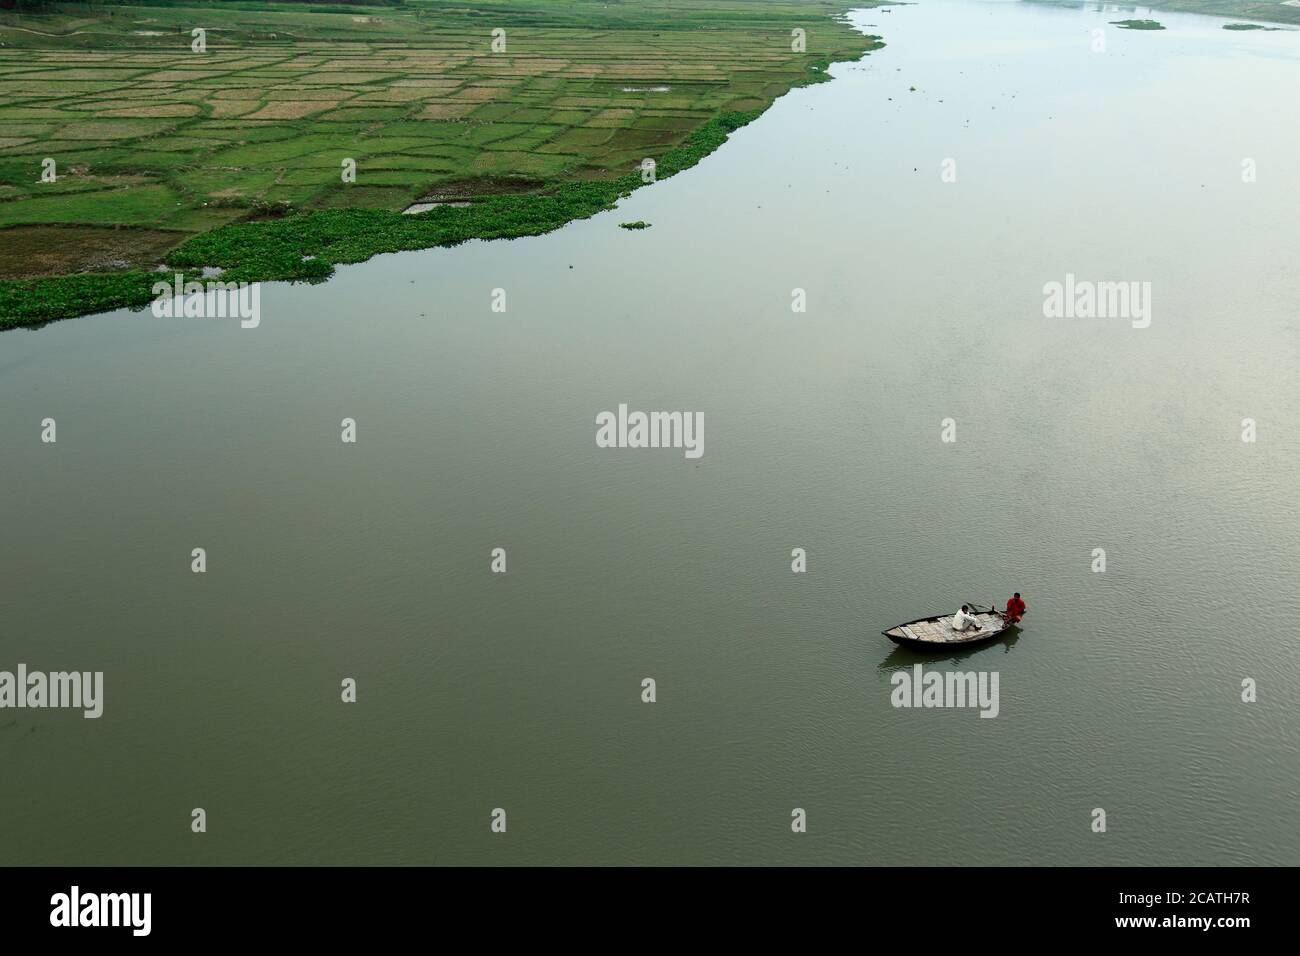 Vue de dessus de la rivière, le bateau de remorquage tire la barge avec des matériaux en bois en soirée d'été.Vue aérienne du paysage depuis les airs. Banque D'Images